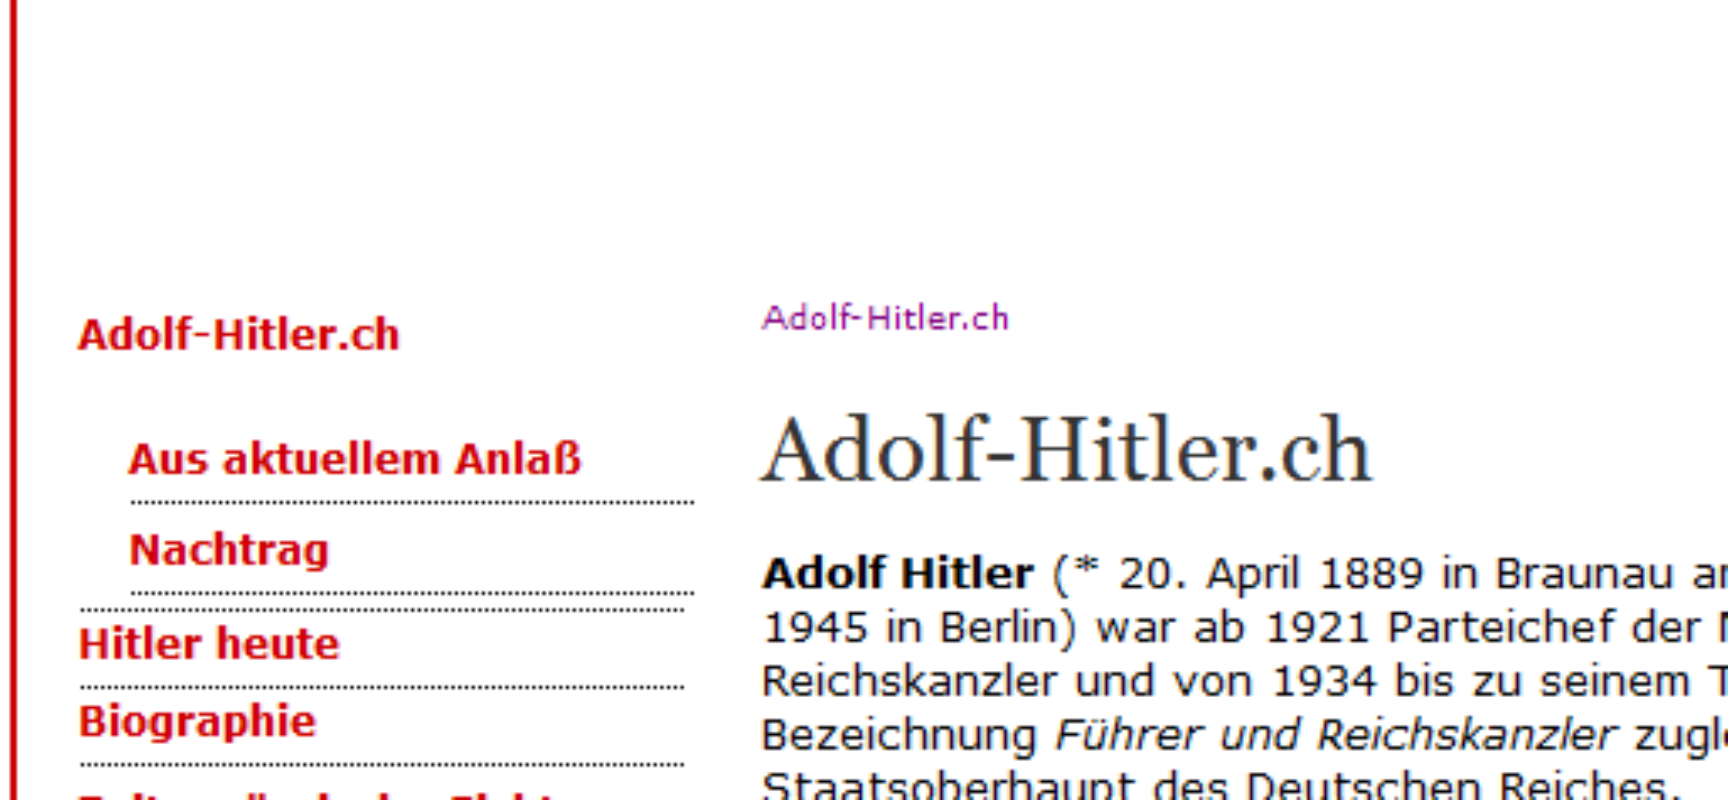 In eigener Sache: Adolf-Hitler.ch in Linksaußen-Medien – Zeitung muß Richtigstellung veröffentlichen und zahlen